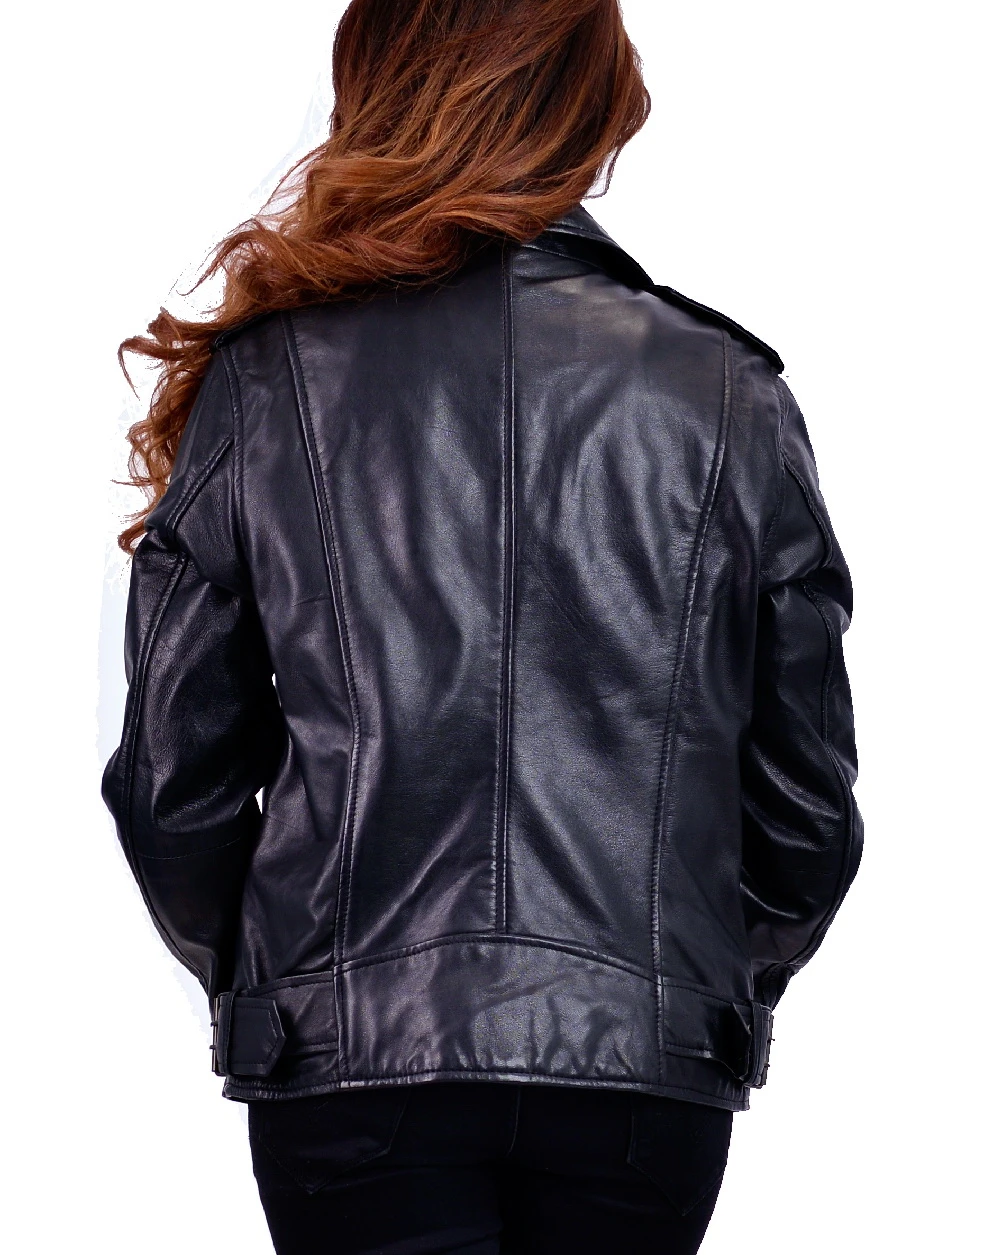 Femme Noir Leather Jacket Biker For Women